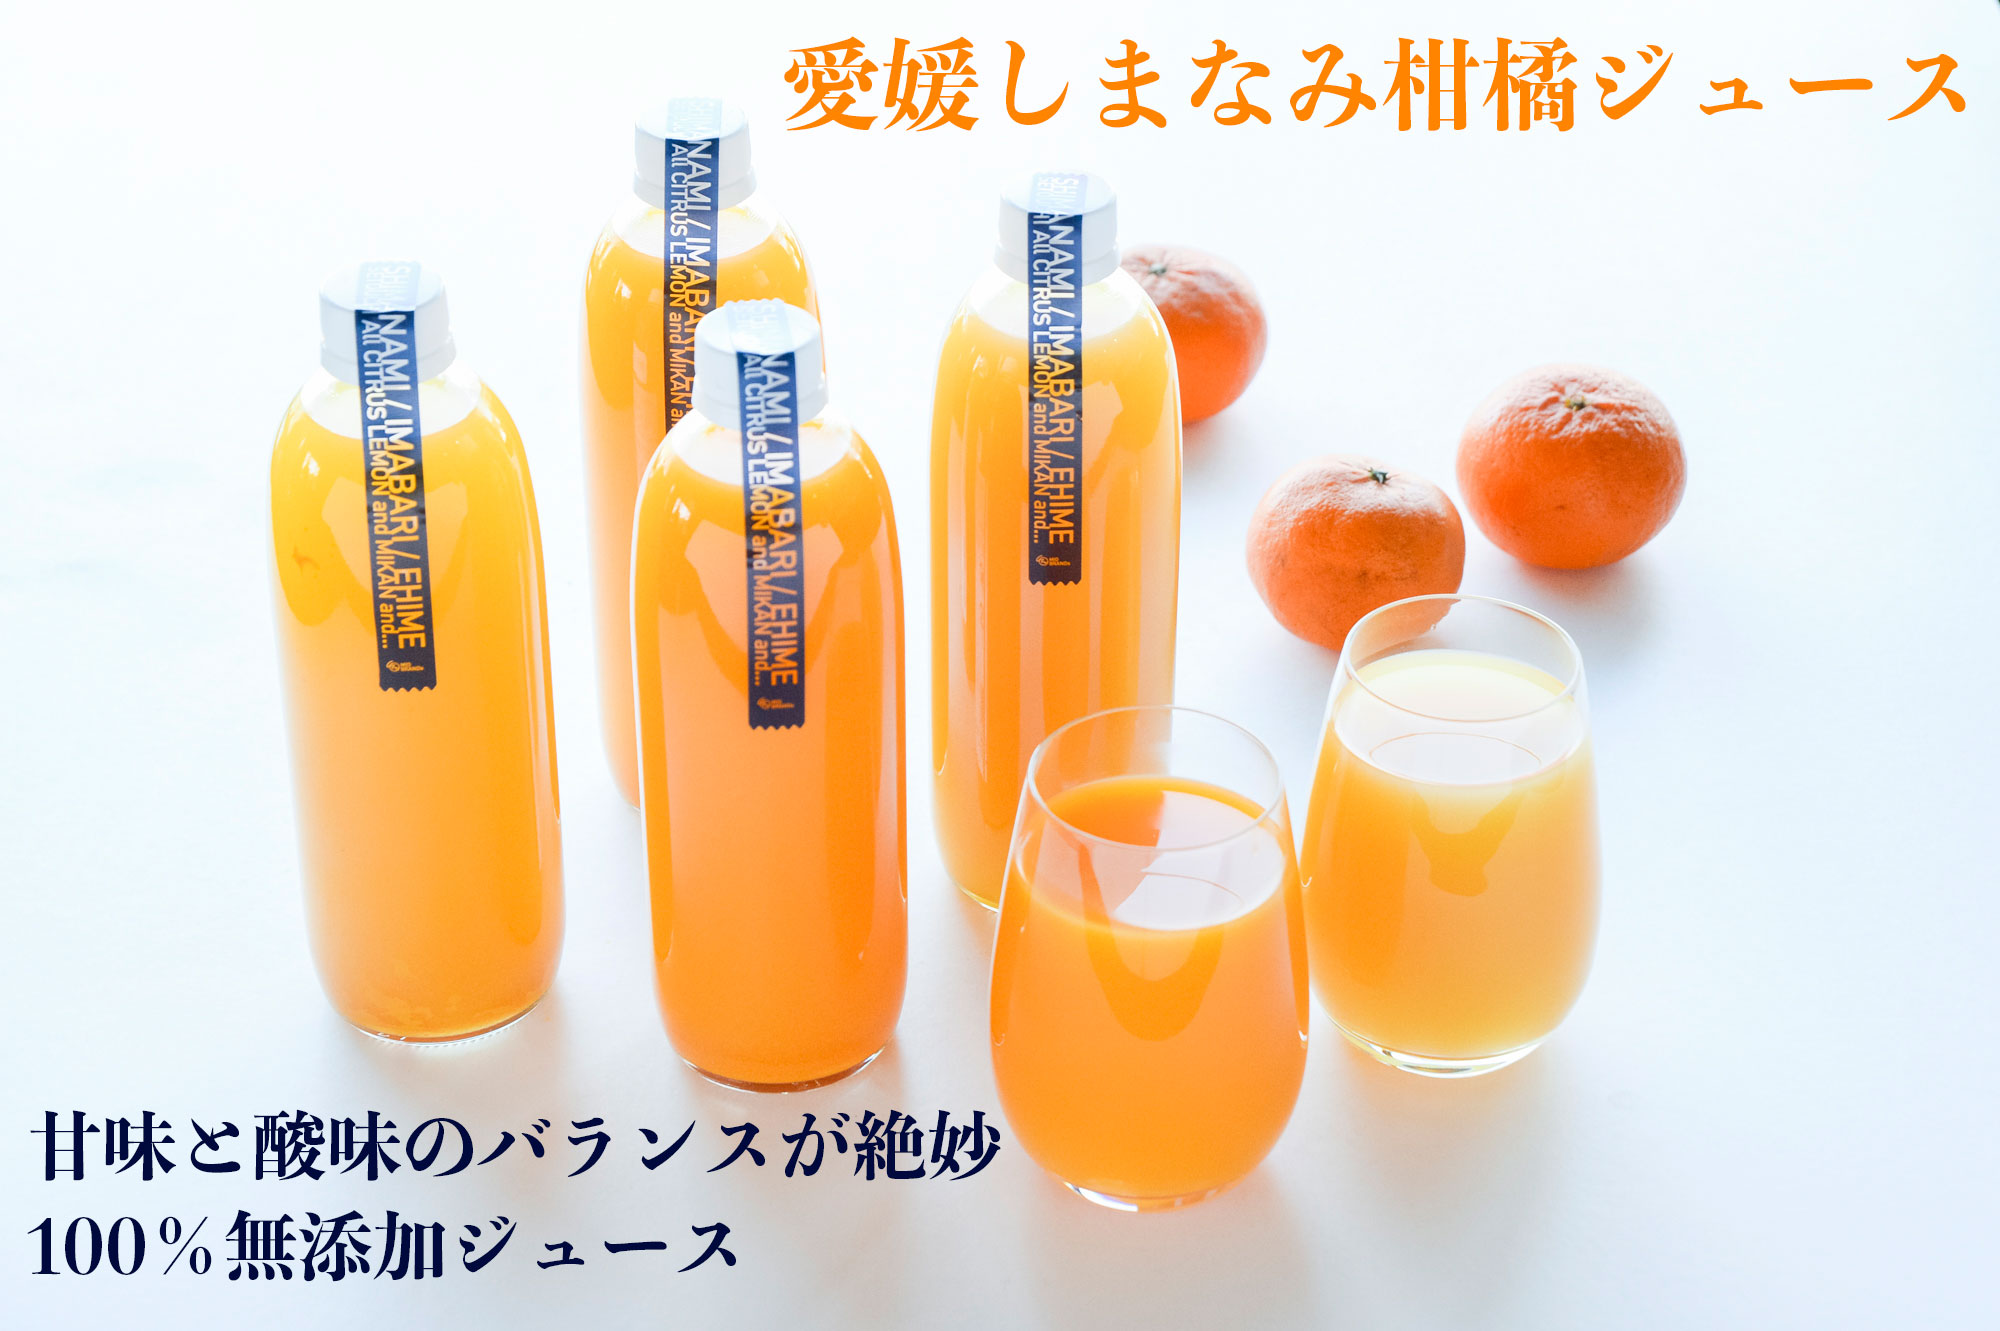 道の駅にも出品しております！愛媛県産えひめみかんジュース1000㎜×12本入りストレート果汁です。温州みかんです。 - 飲料